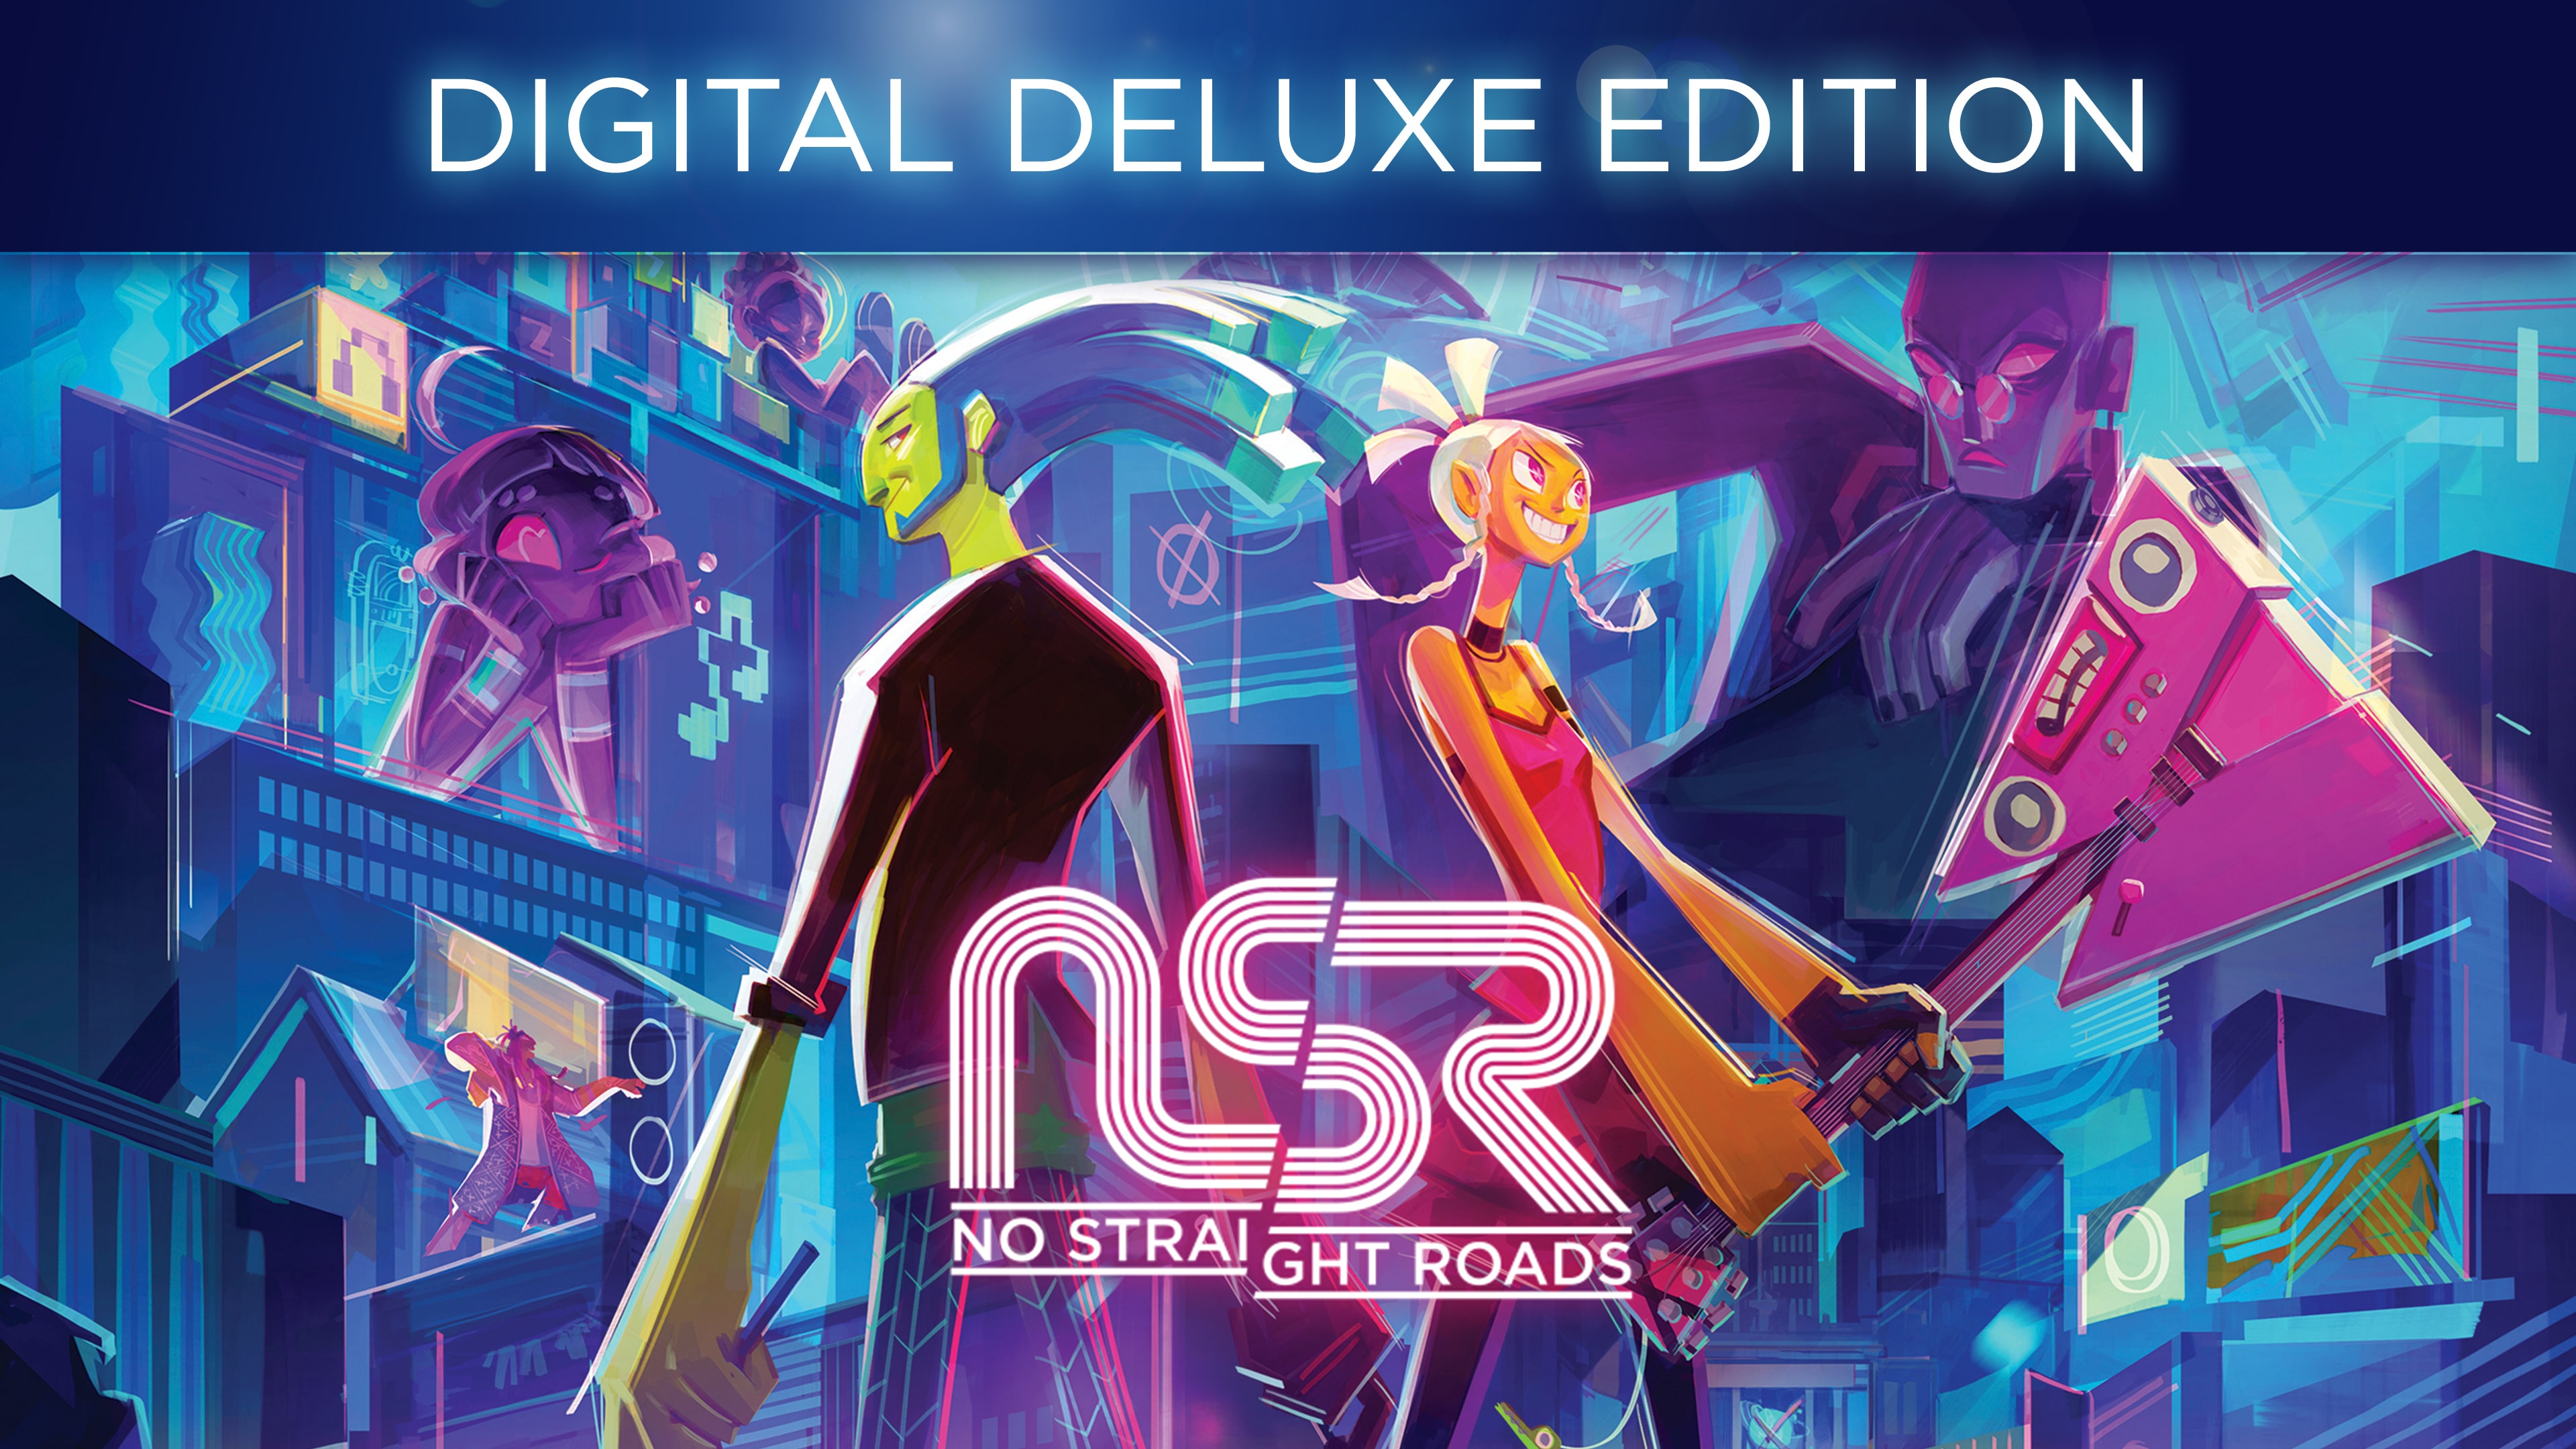 No Straight Roads - Edição Digital Deluxe